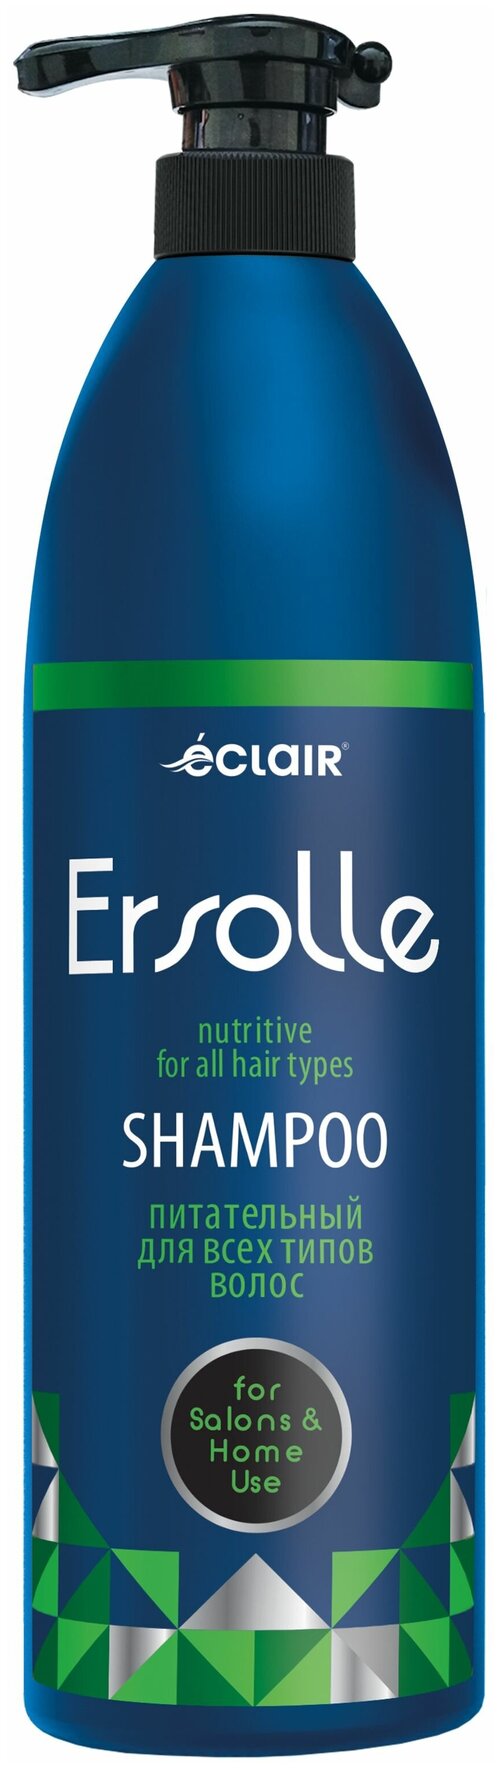 ЕCLAIR Шампунь для всех типов волос ERSOLLE питание, 1000 мл